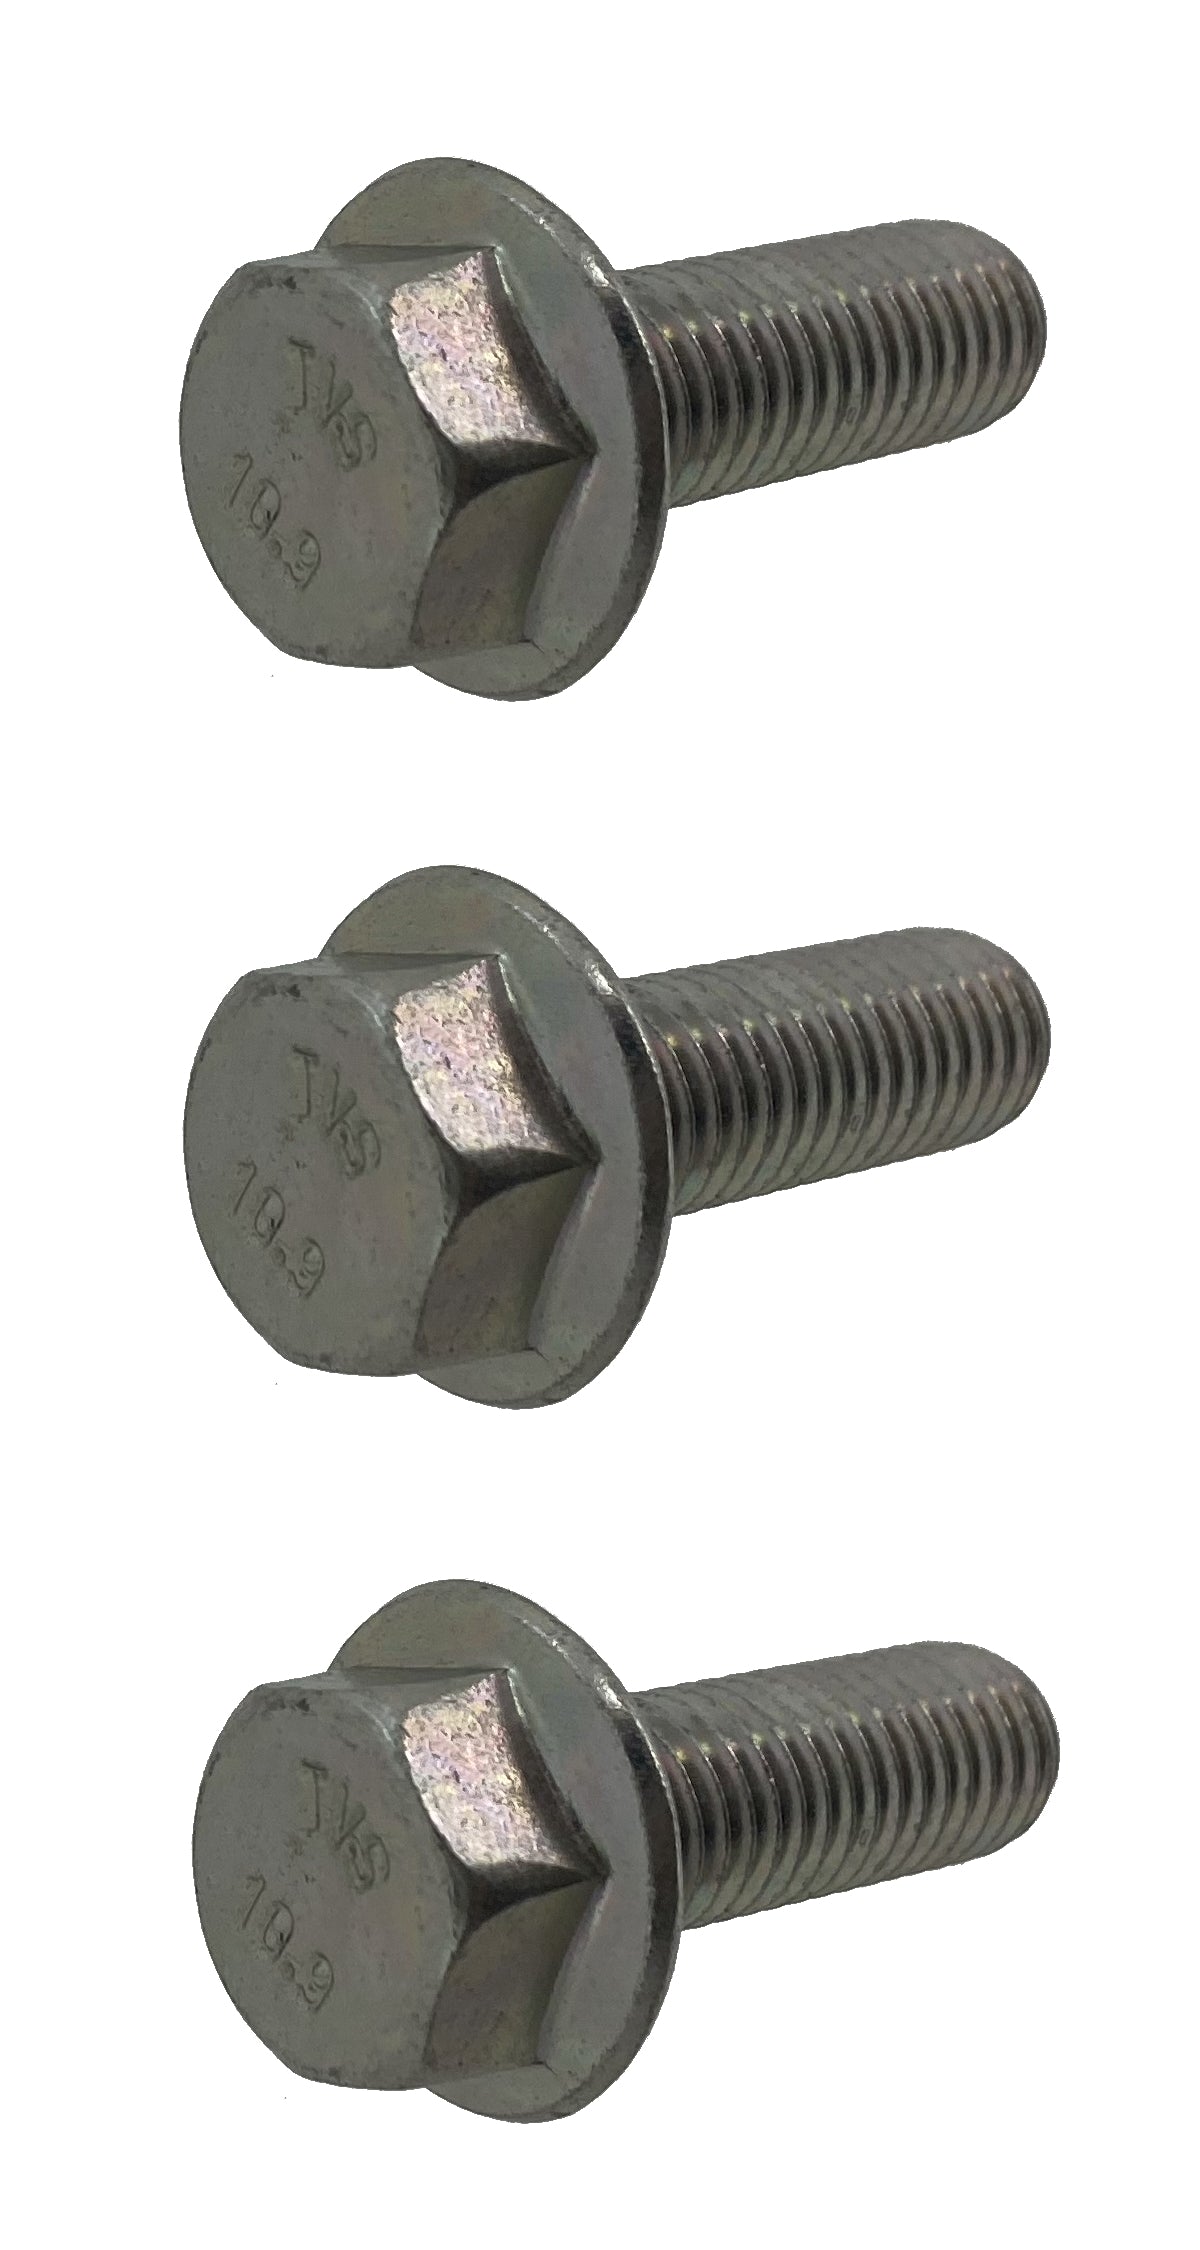 John Deere Original Equipment Screw (3 Pack) - 19M7786